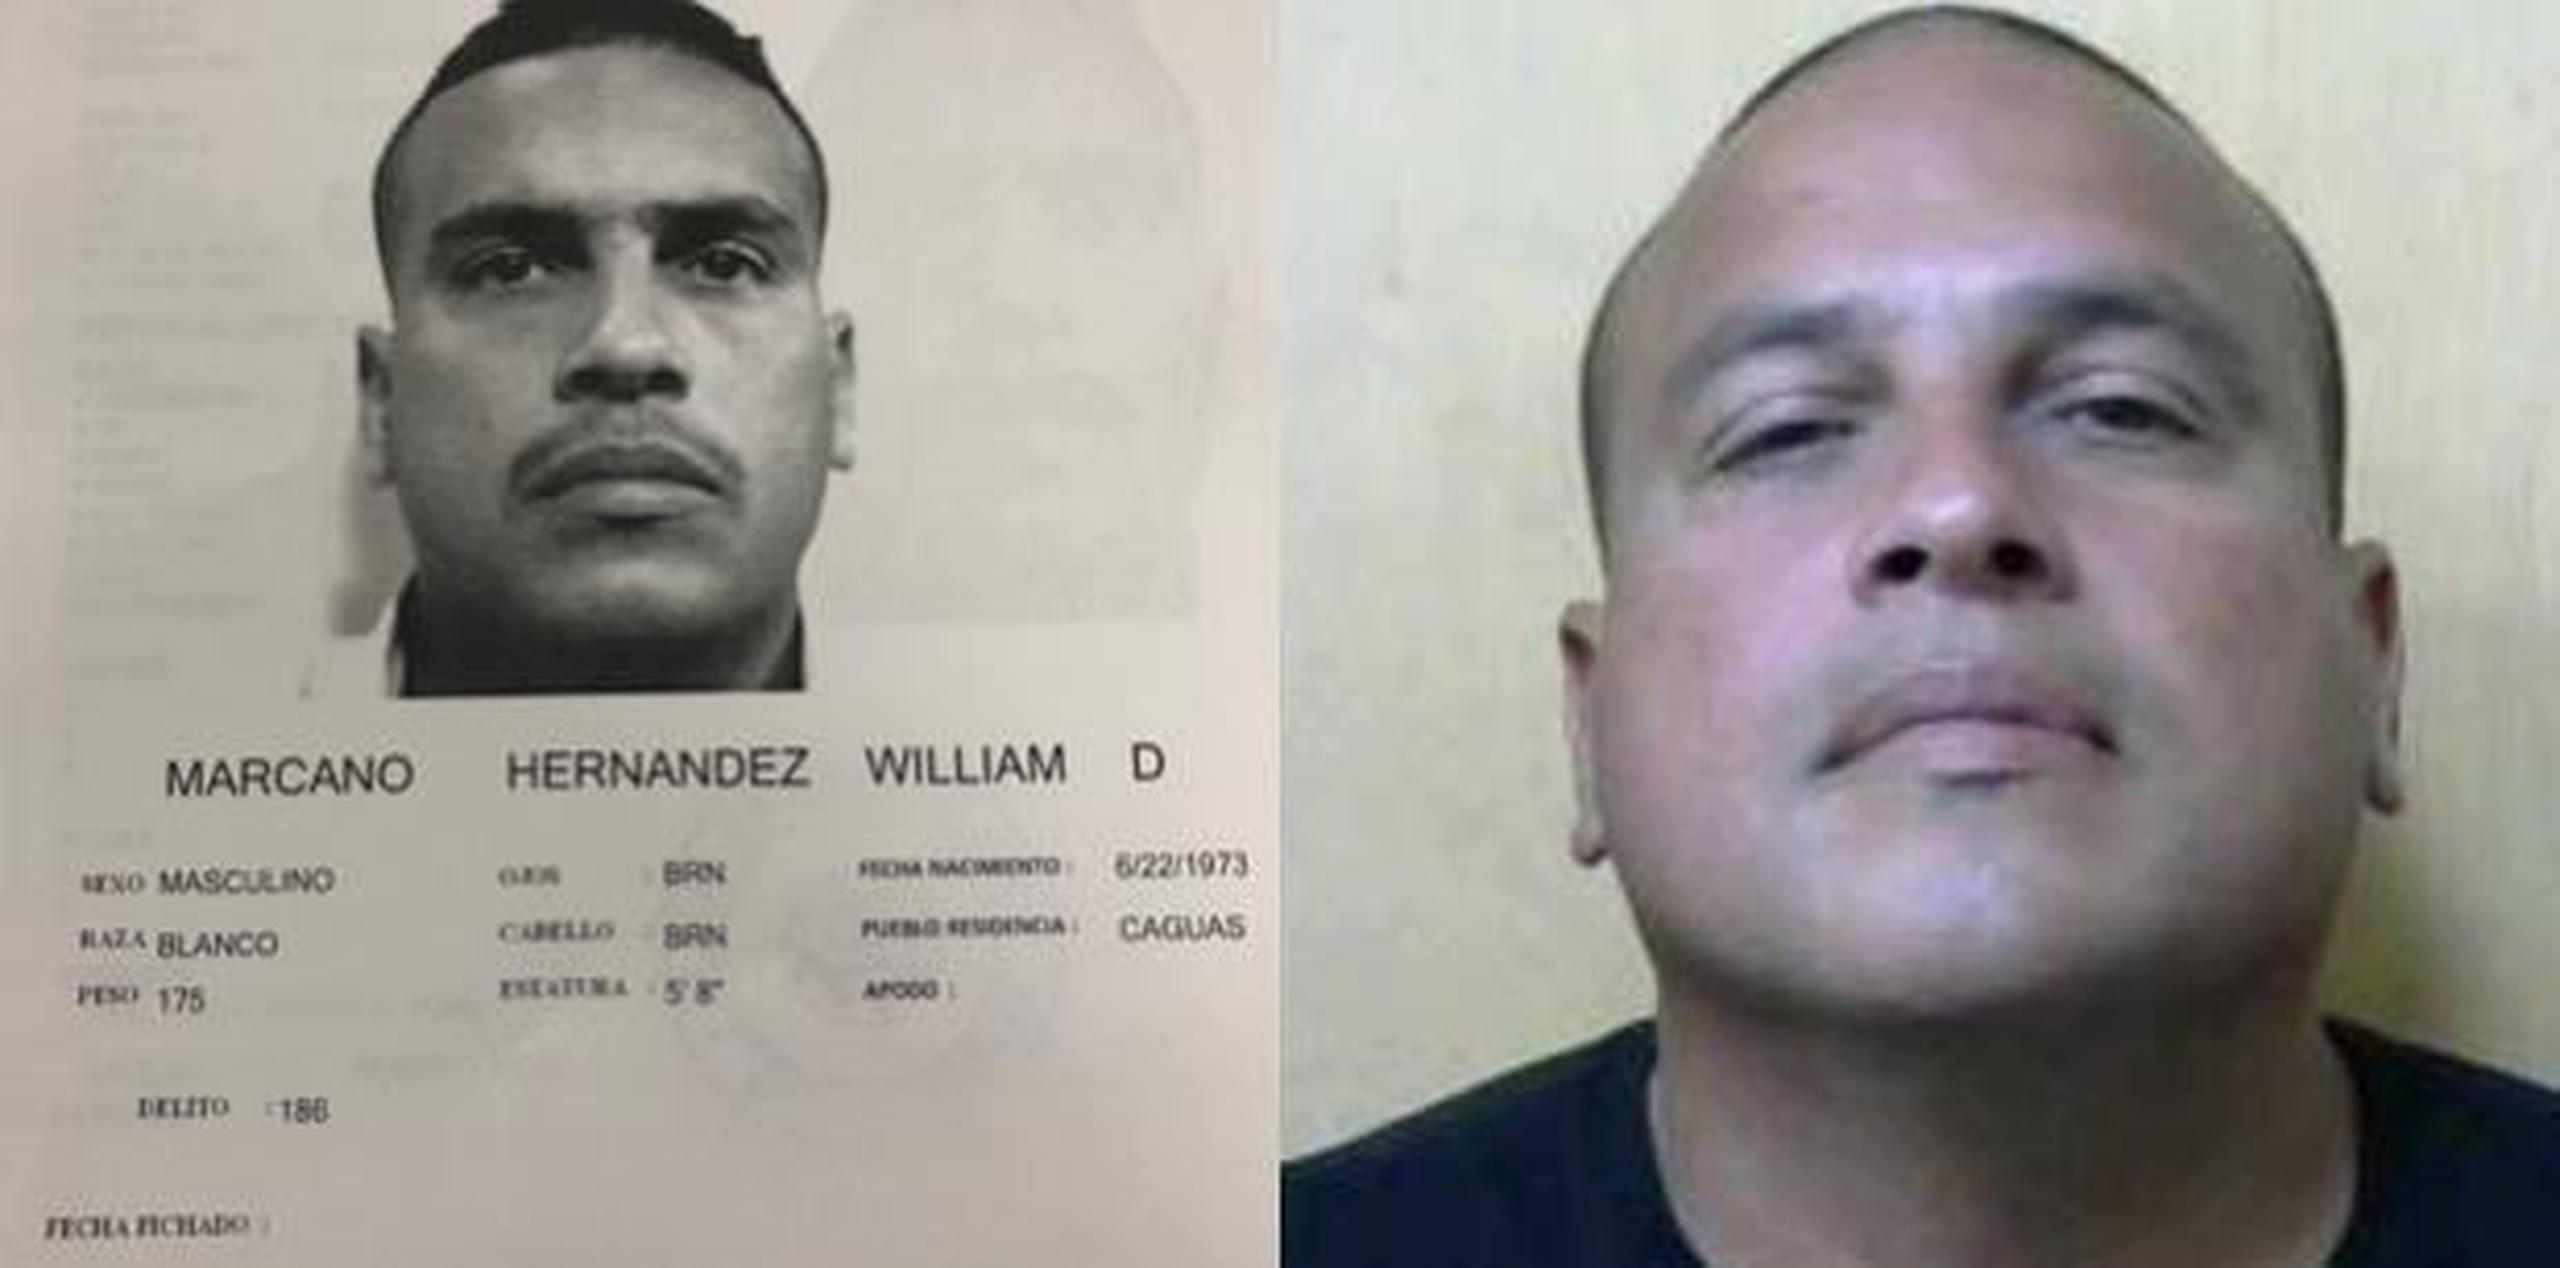 El individuo tiene expediente criminal por asesinato en el 2001, pero el capitán desconocía la resolución final del caso. (Imágenes suministradas por la Policía de Puerto Rico)